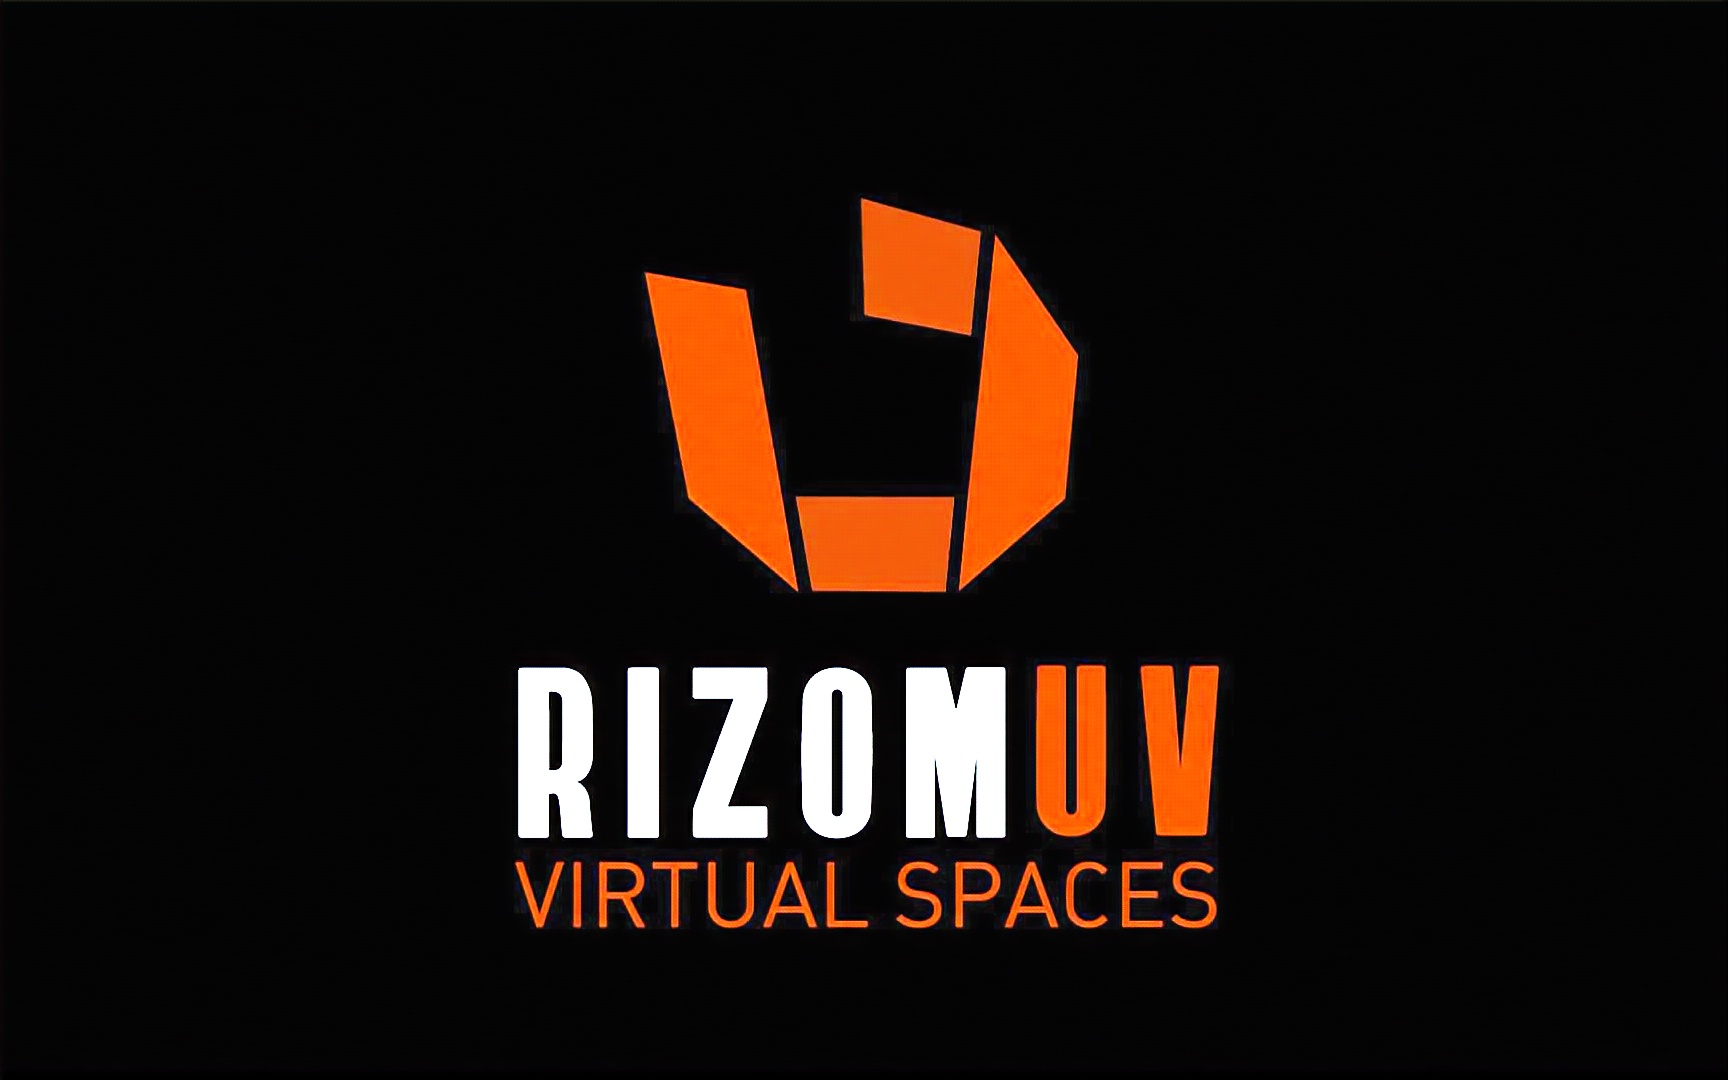 free for apple instal Rizom-Lab RizomUV Real & Virtual Space 2023.0.54